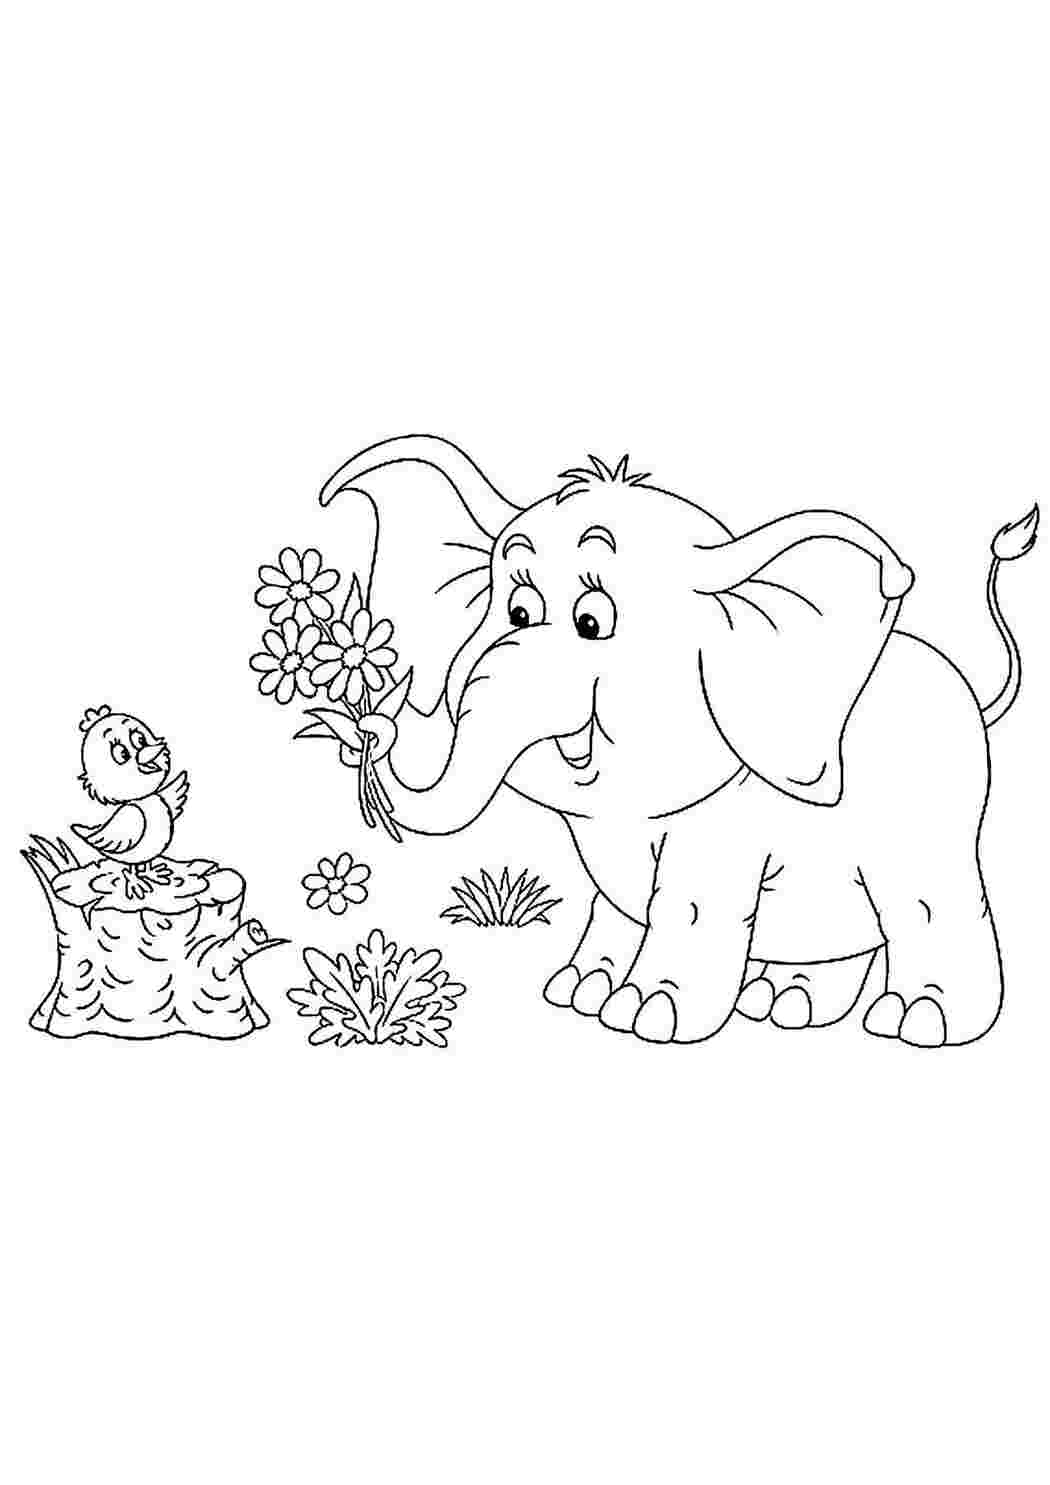 Раскраски Раскраски с животными для малышей Раннее развитие детей. Животные на раскрасках